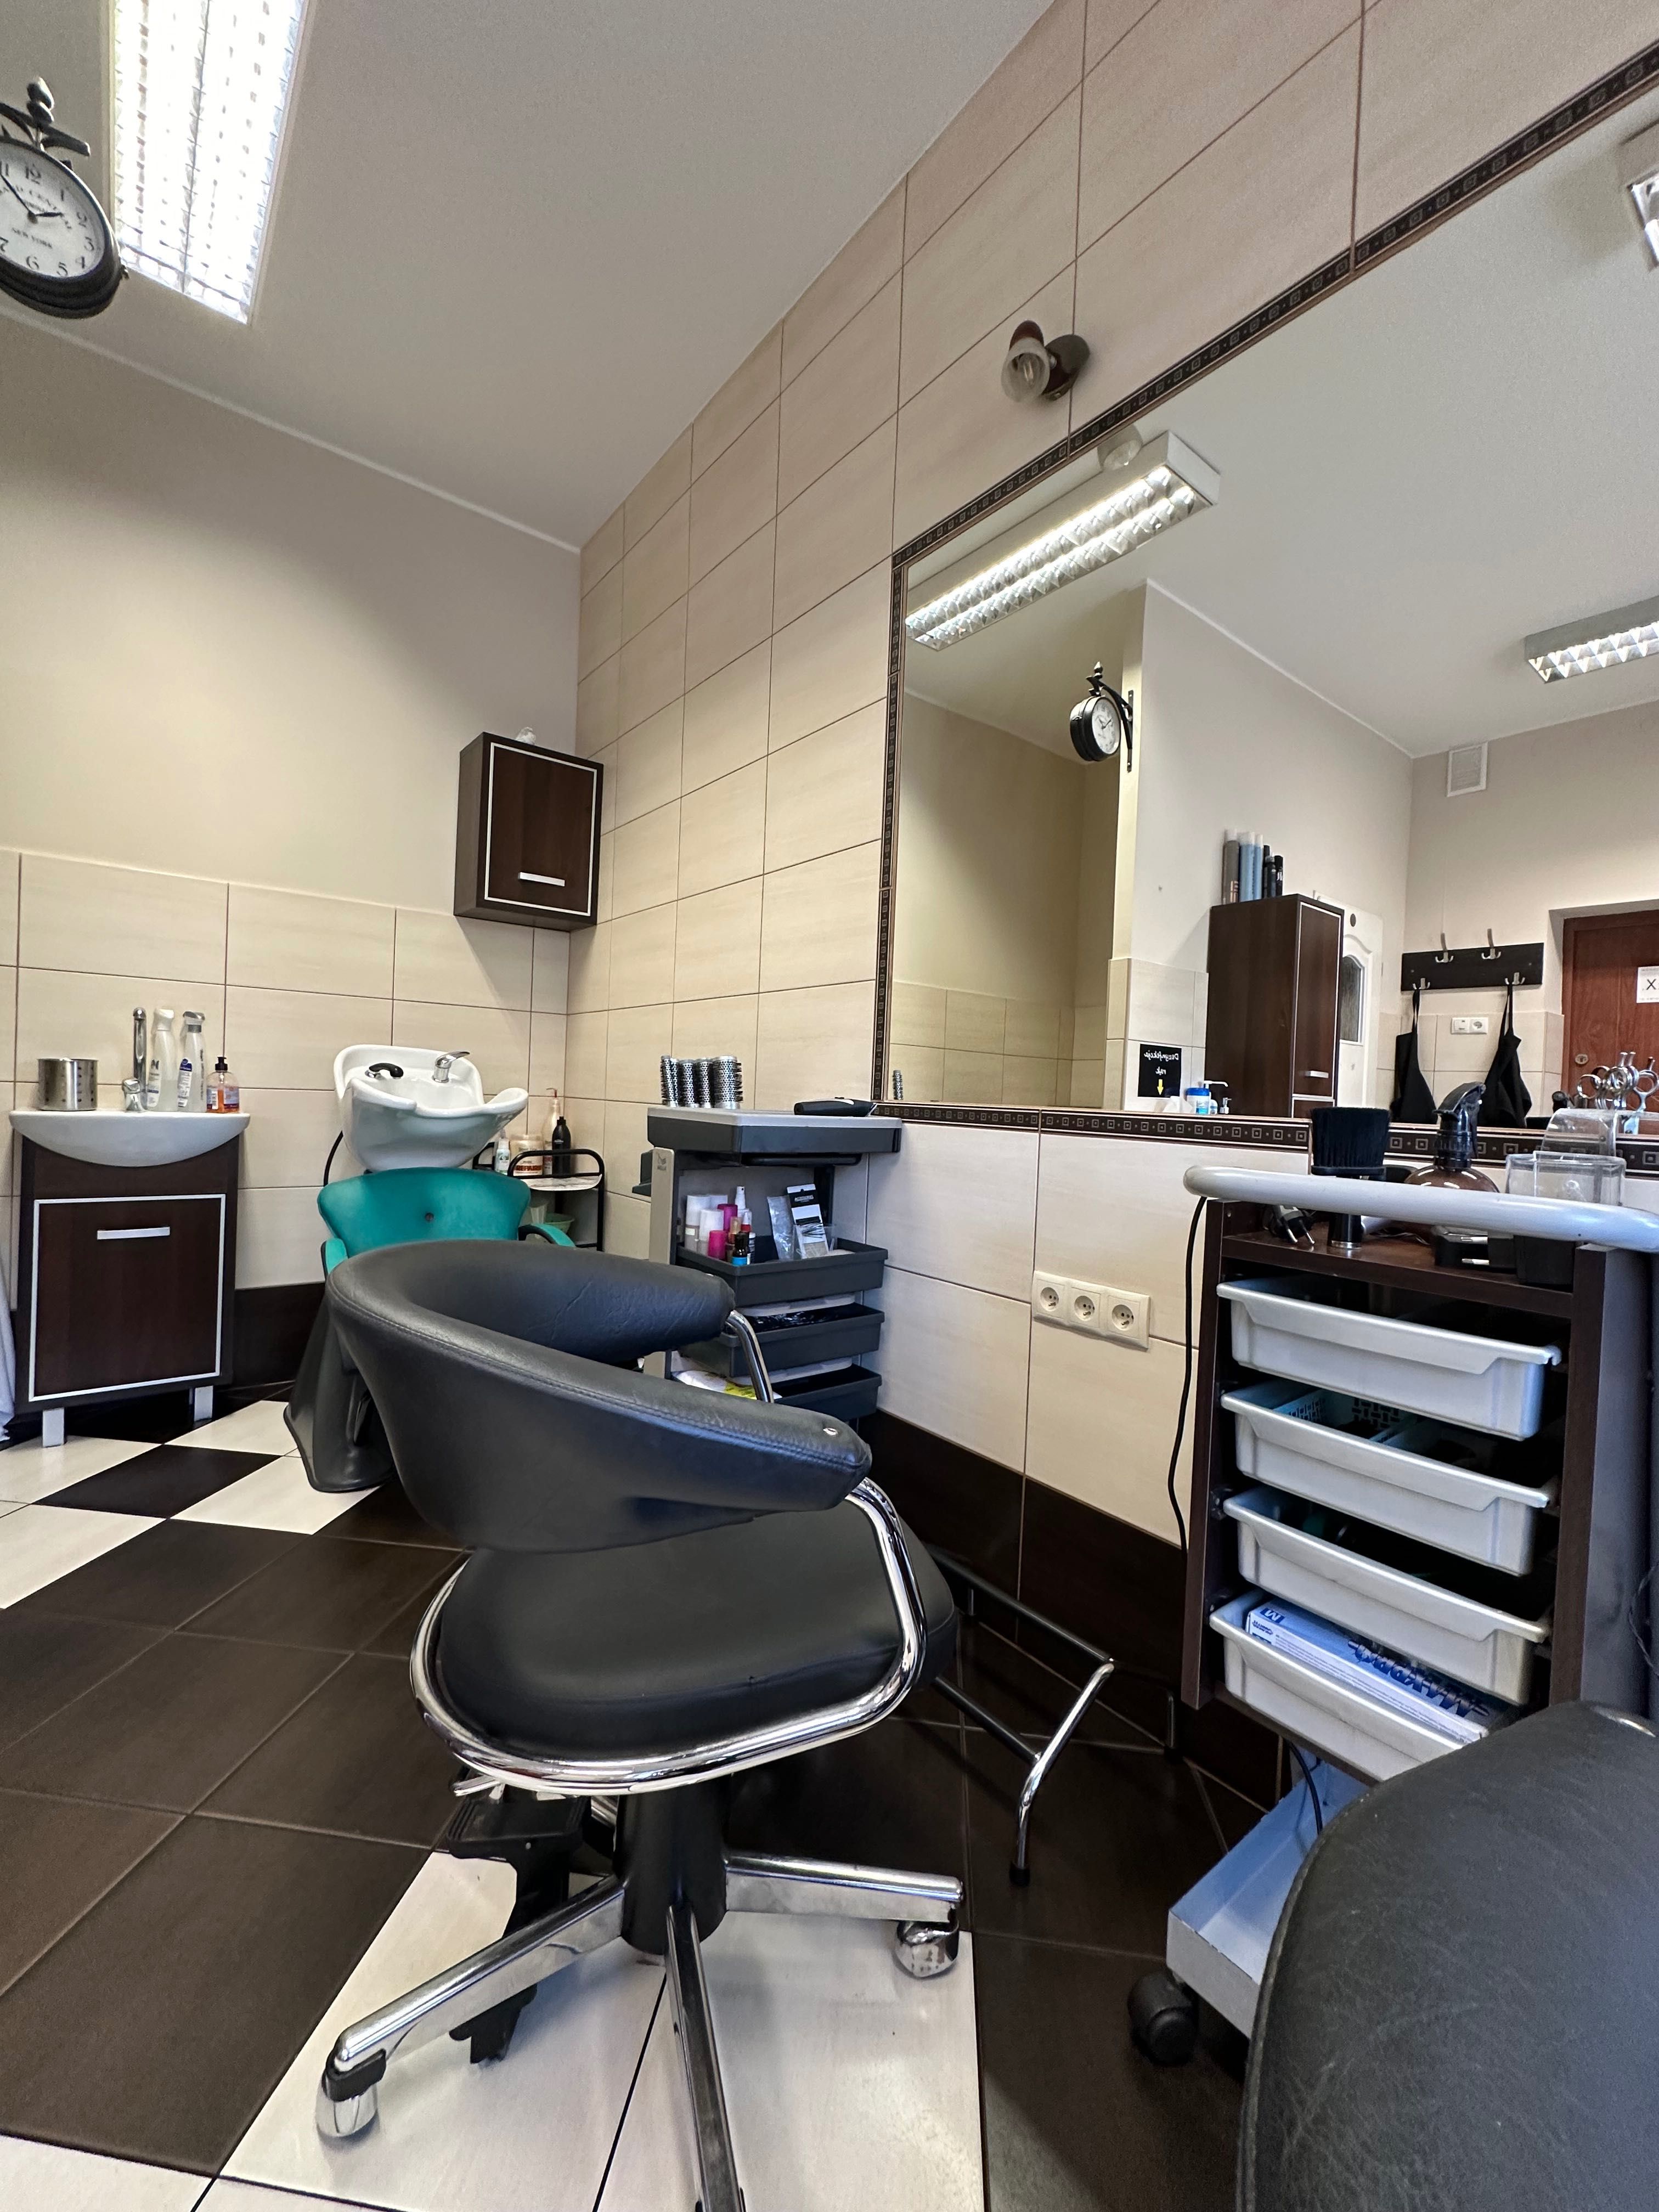 Lokal bezczynszowy Salon fryzjerski Barber na sprzedaż centrum Otyń